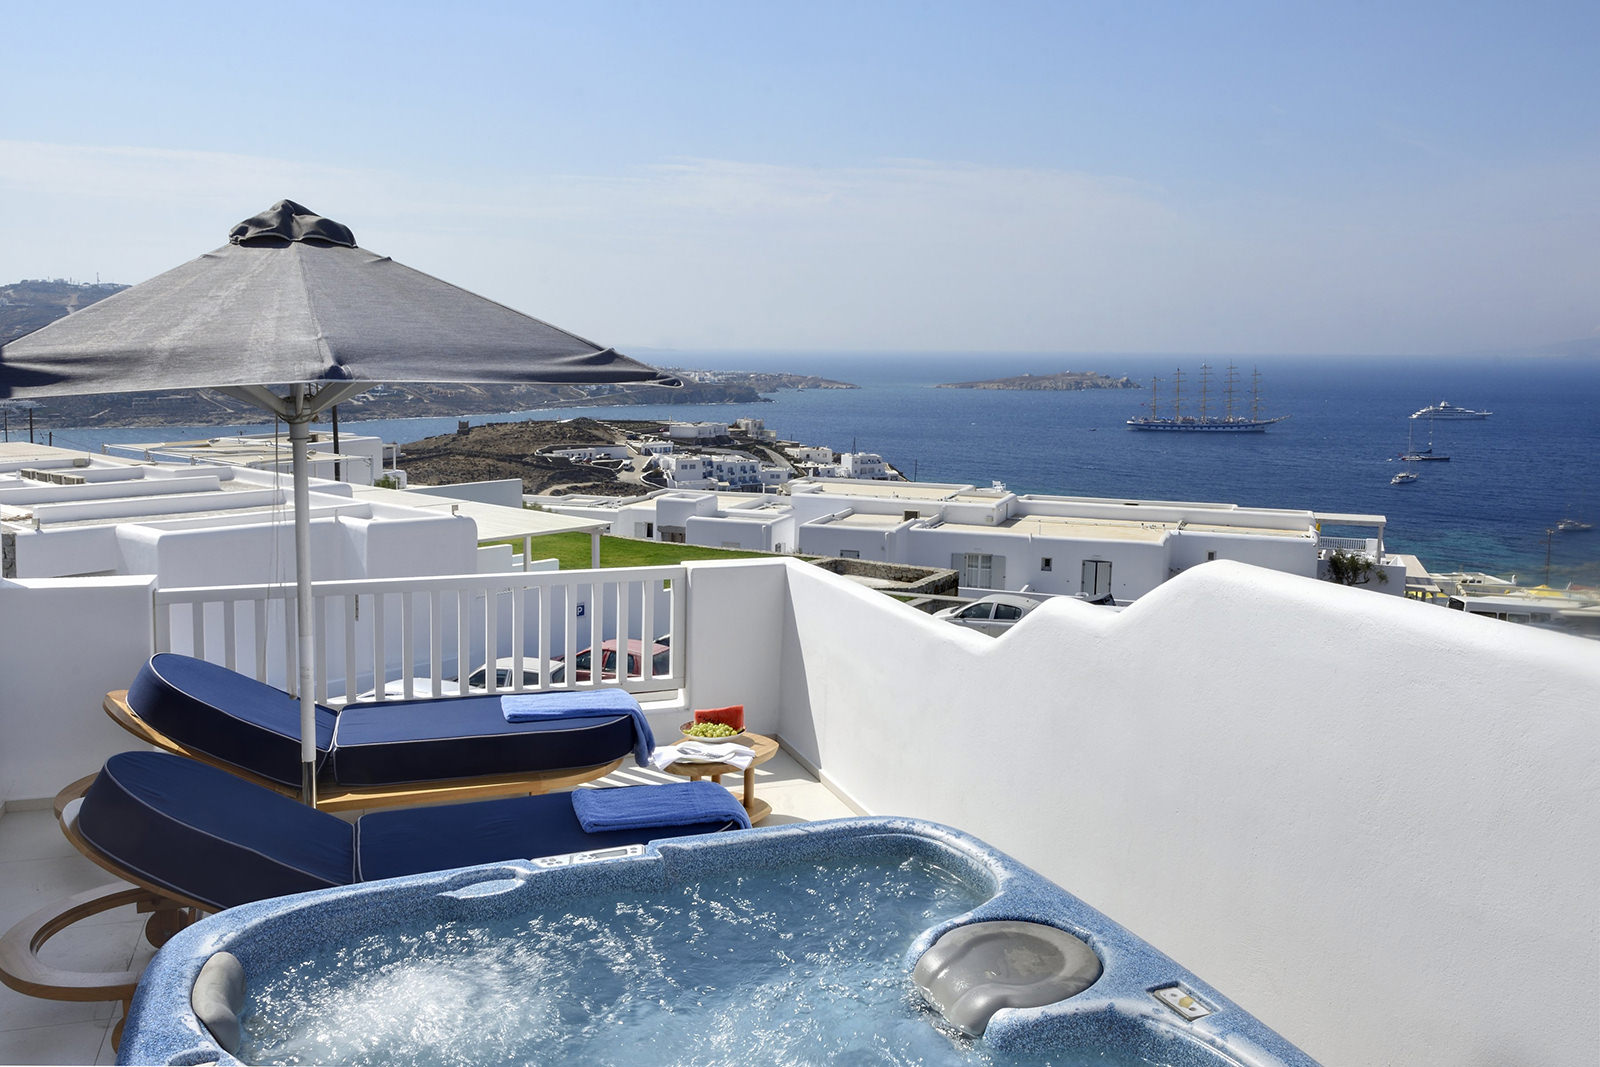 Myconian Kyma - 5 star Luxury Hotel in Mykonos island, Greece